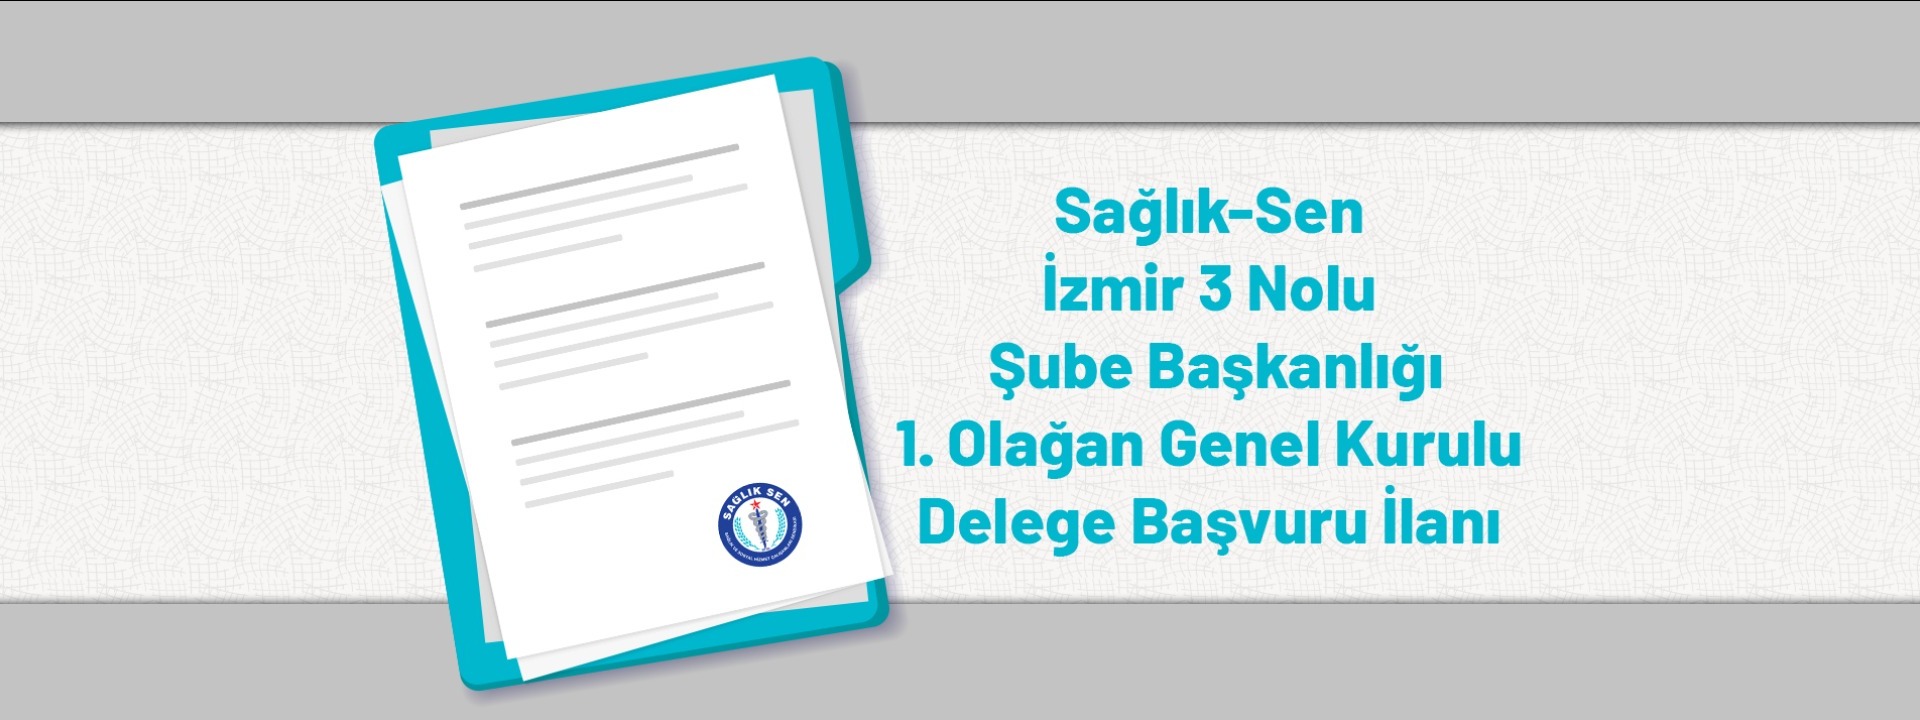 Sağlık-Sen İzmir 3 Nolu Şube Başkanlığı 1. Olağan Genel Kurulu Delege Başvuru İlanı